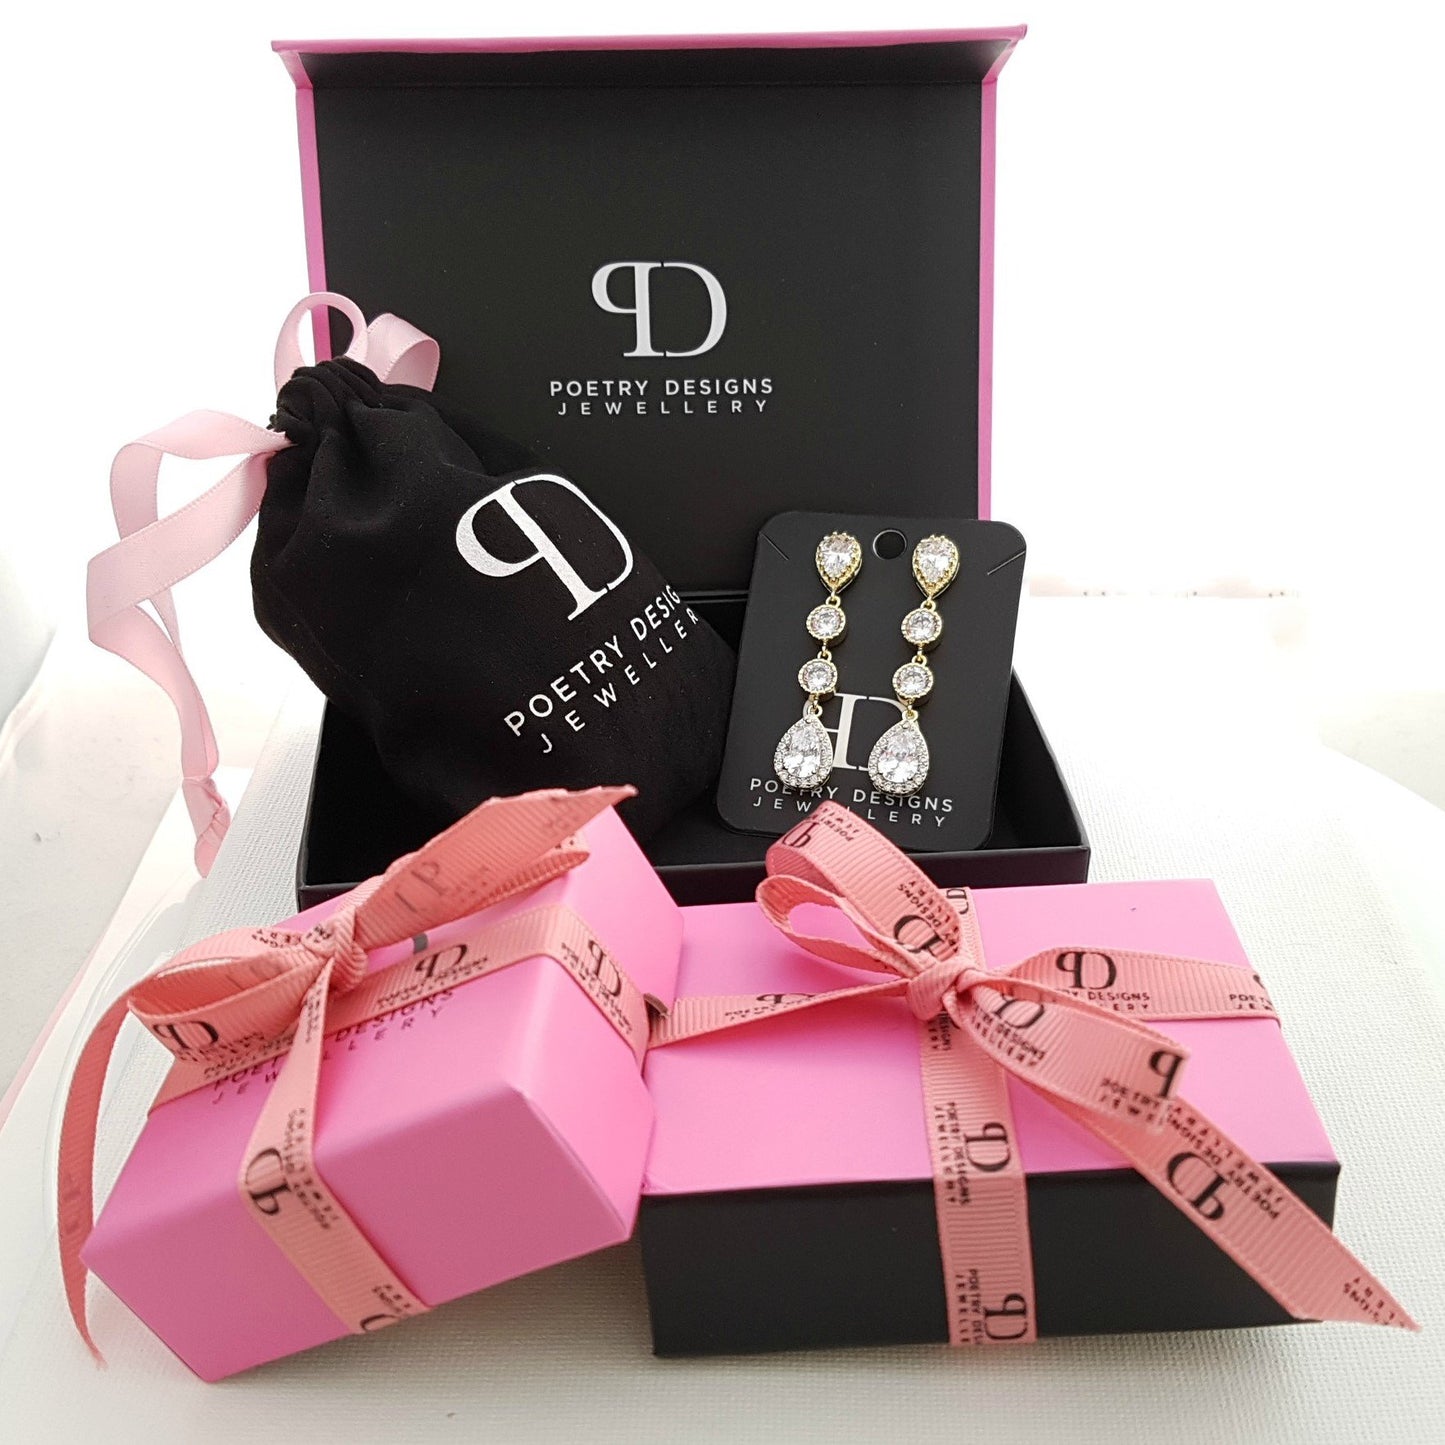 Diamante Earrings are packed in Poetry Designs Packaging